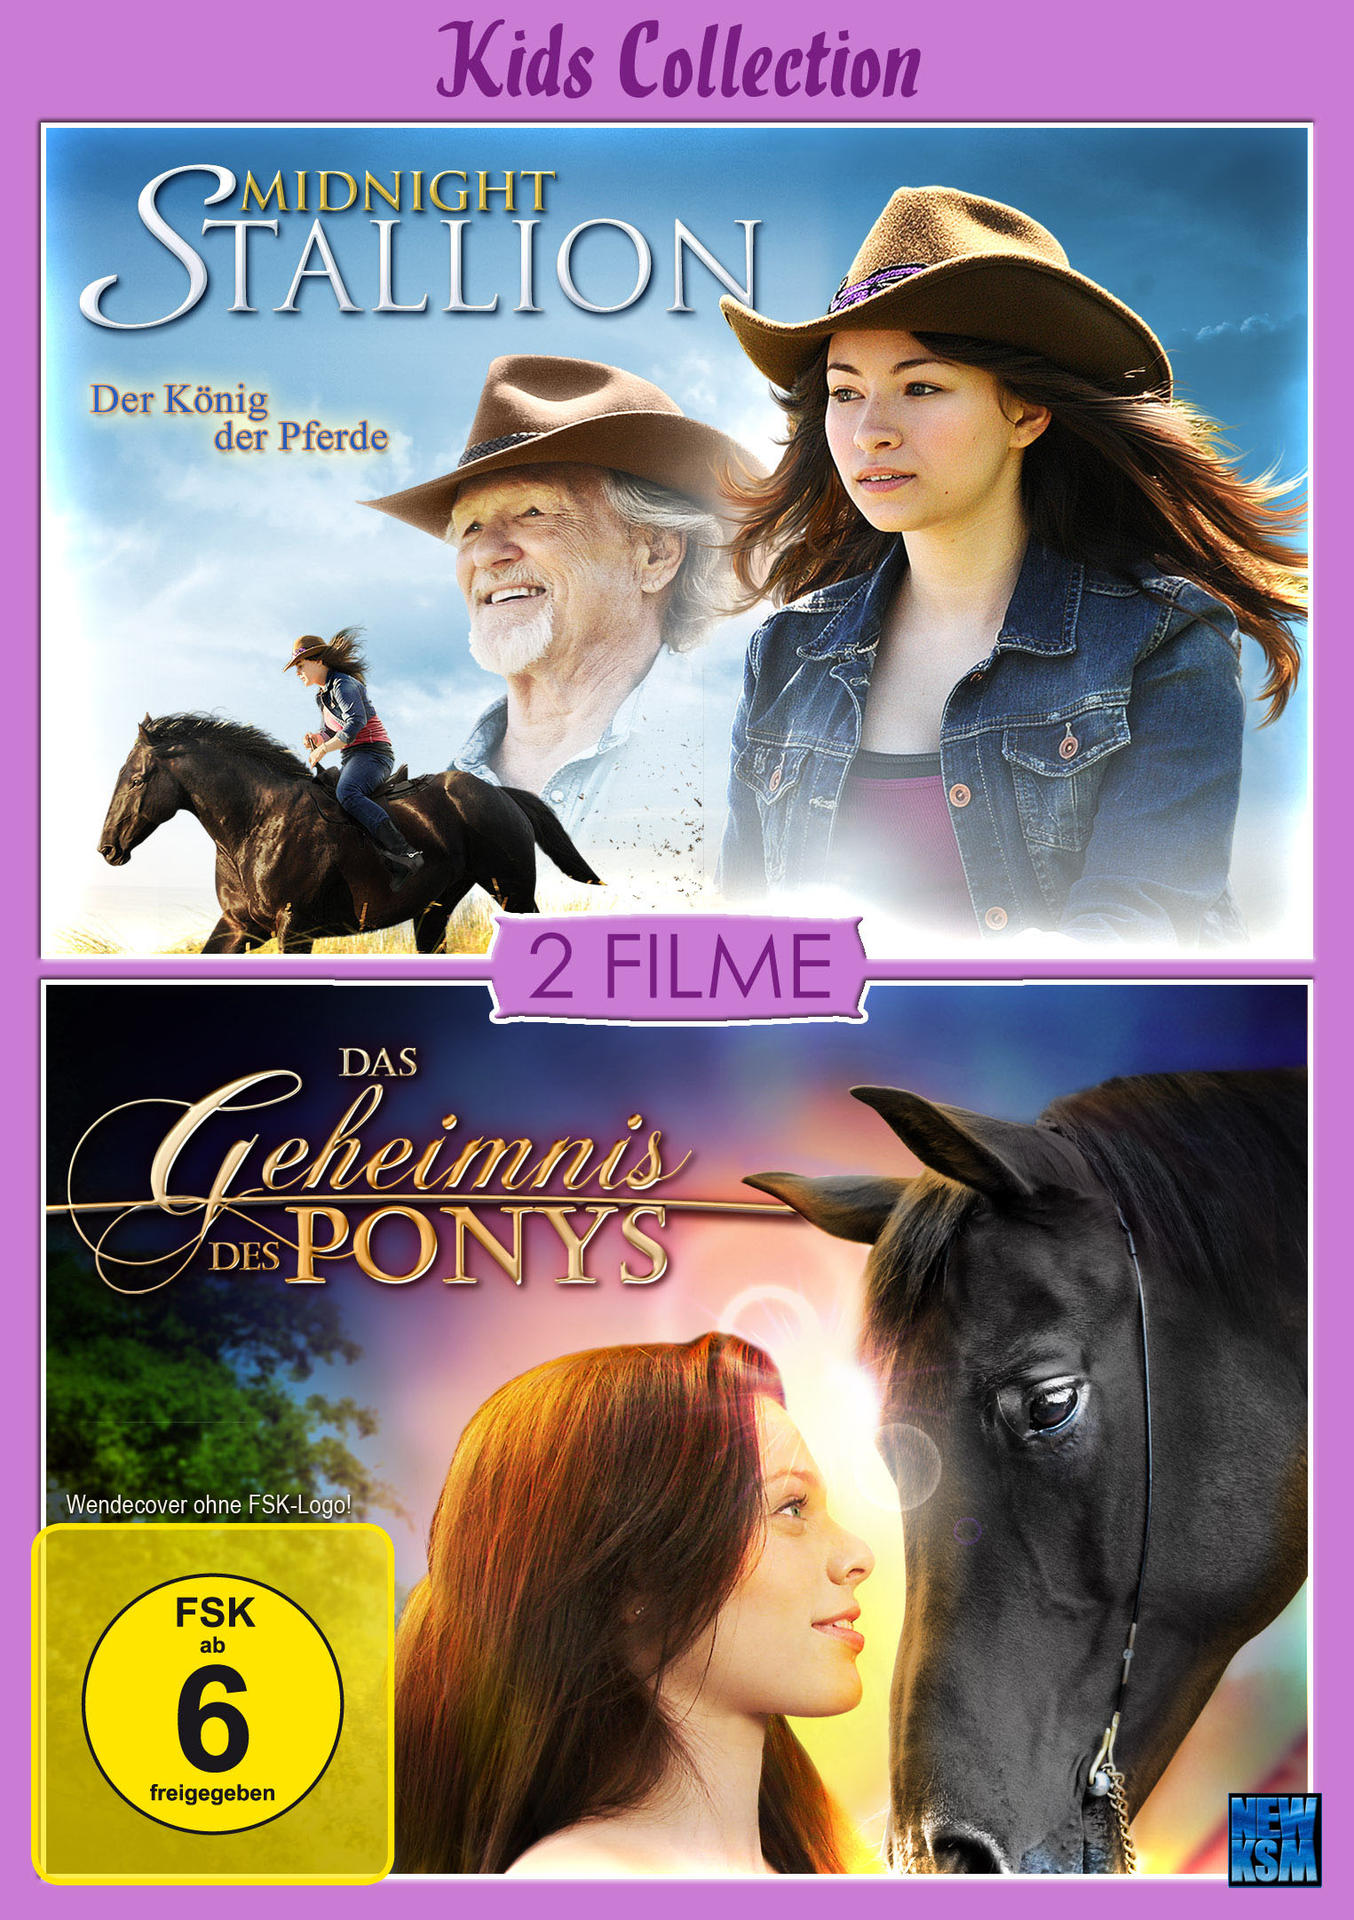 Das Geheimnis - + Midnight Stallion Ponys Kids des Collection DVD